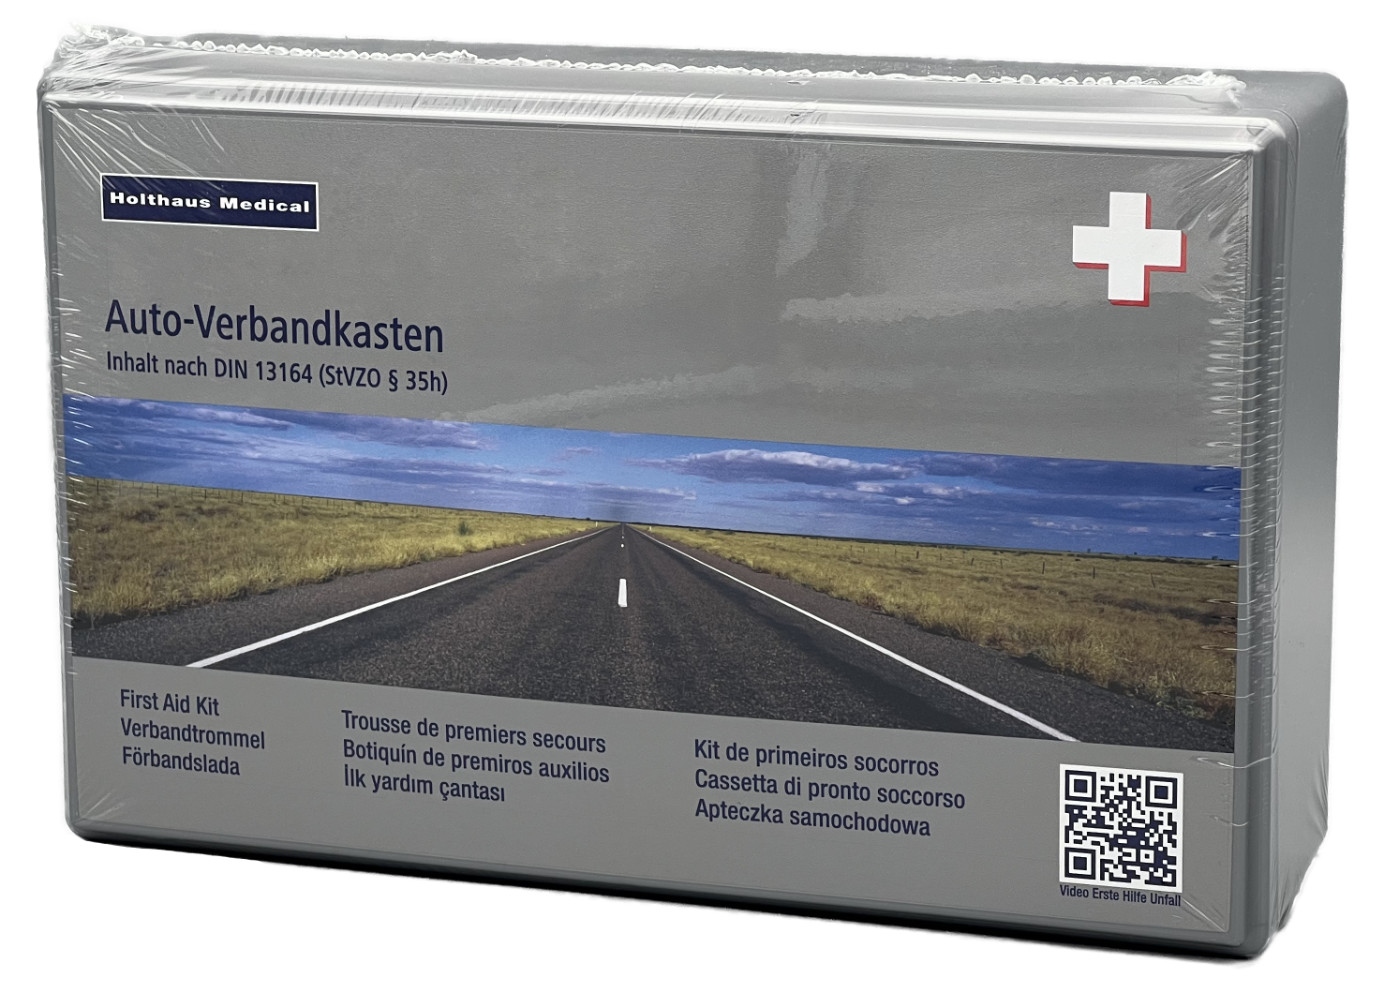 Holthaus Medical KFZ-Verbandkasten DIN 13164 online kaufen